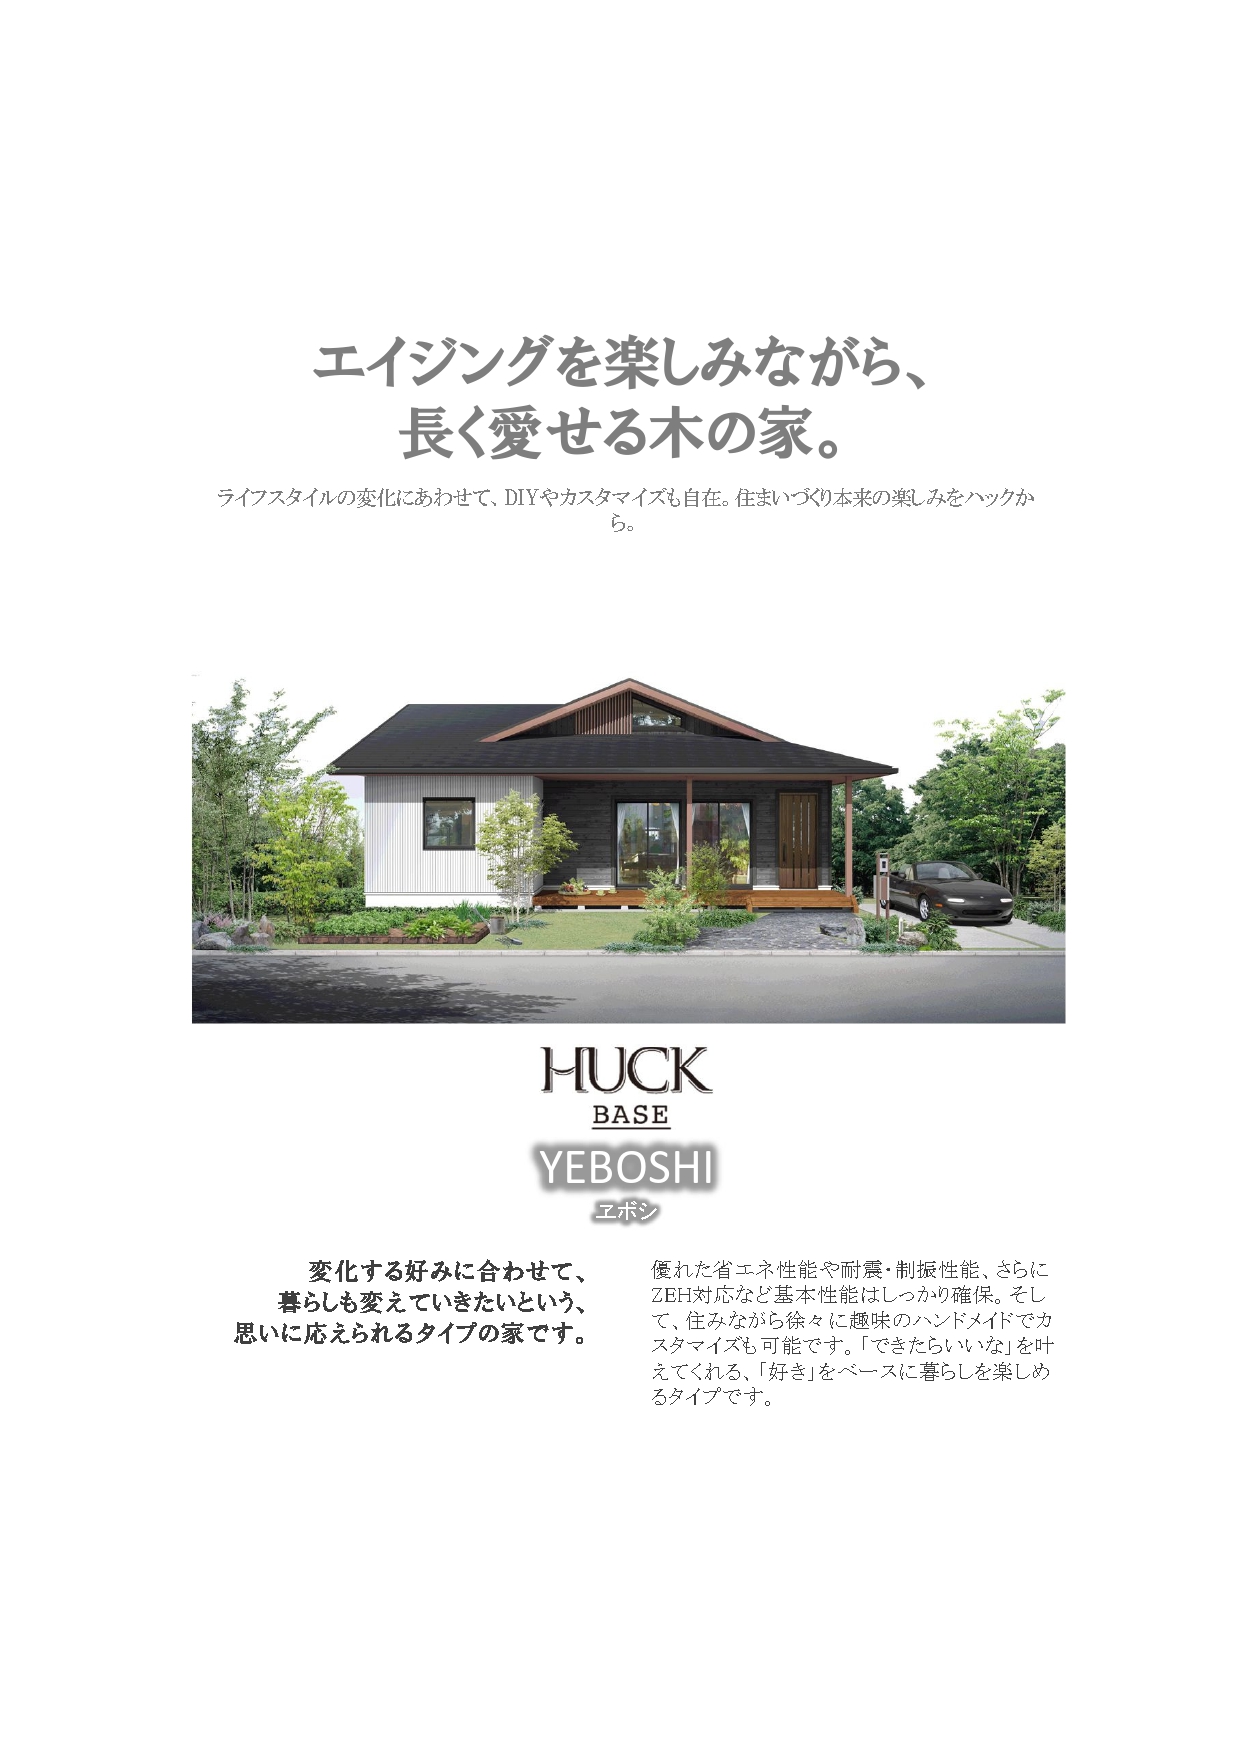 HUCK-YEBOSHI03.jpg